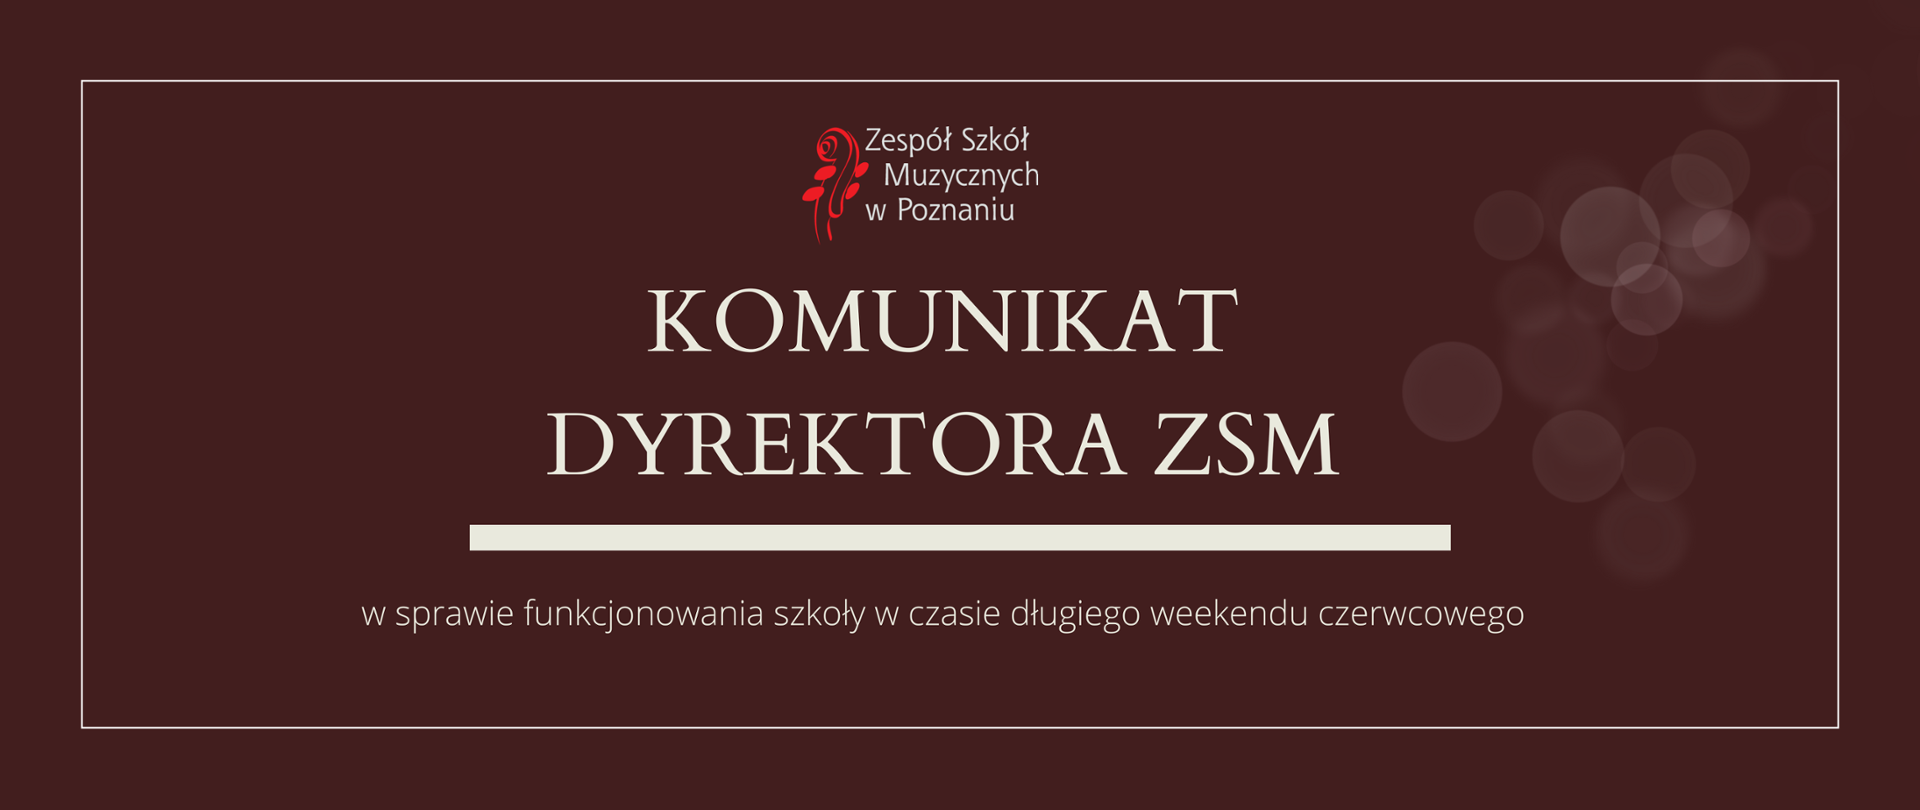 Grafika w brązowym odcieniu z logo ZSM i tekstem /"KOMUNIKAT DYREKTORA ZSM"/ poniżej biała gruba linia, niżej tekst /"w sprawie funkcjonowania szkoły w czasie długiego weekendu czerwcowego"/